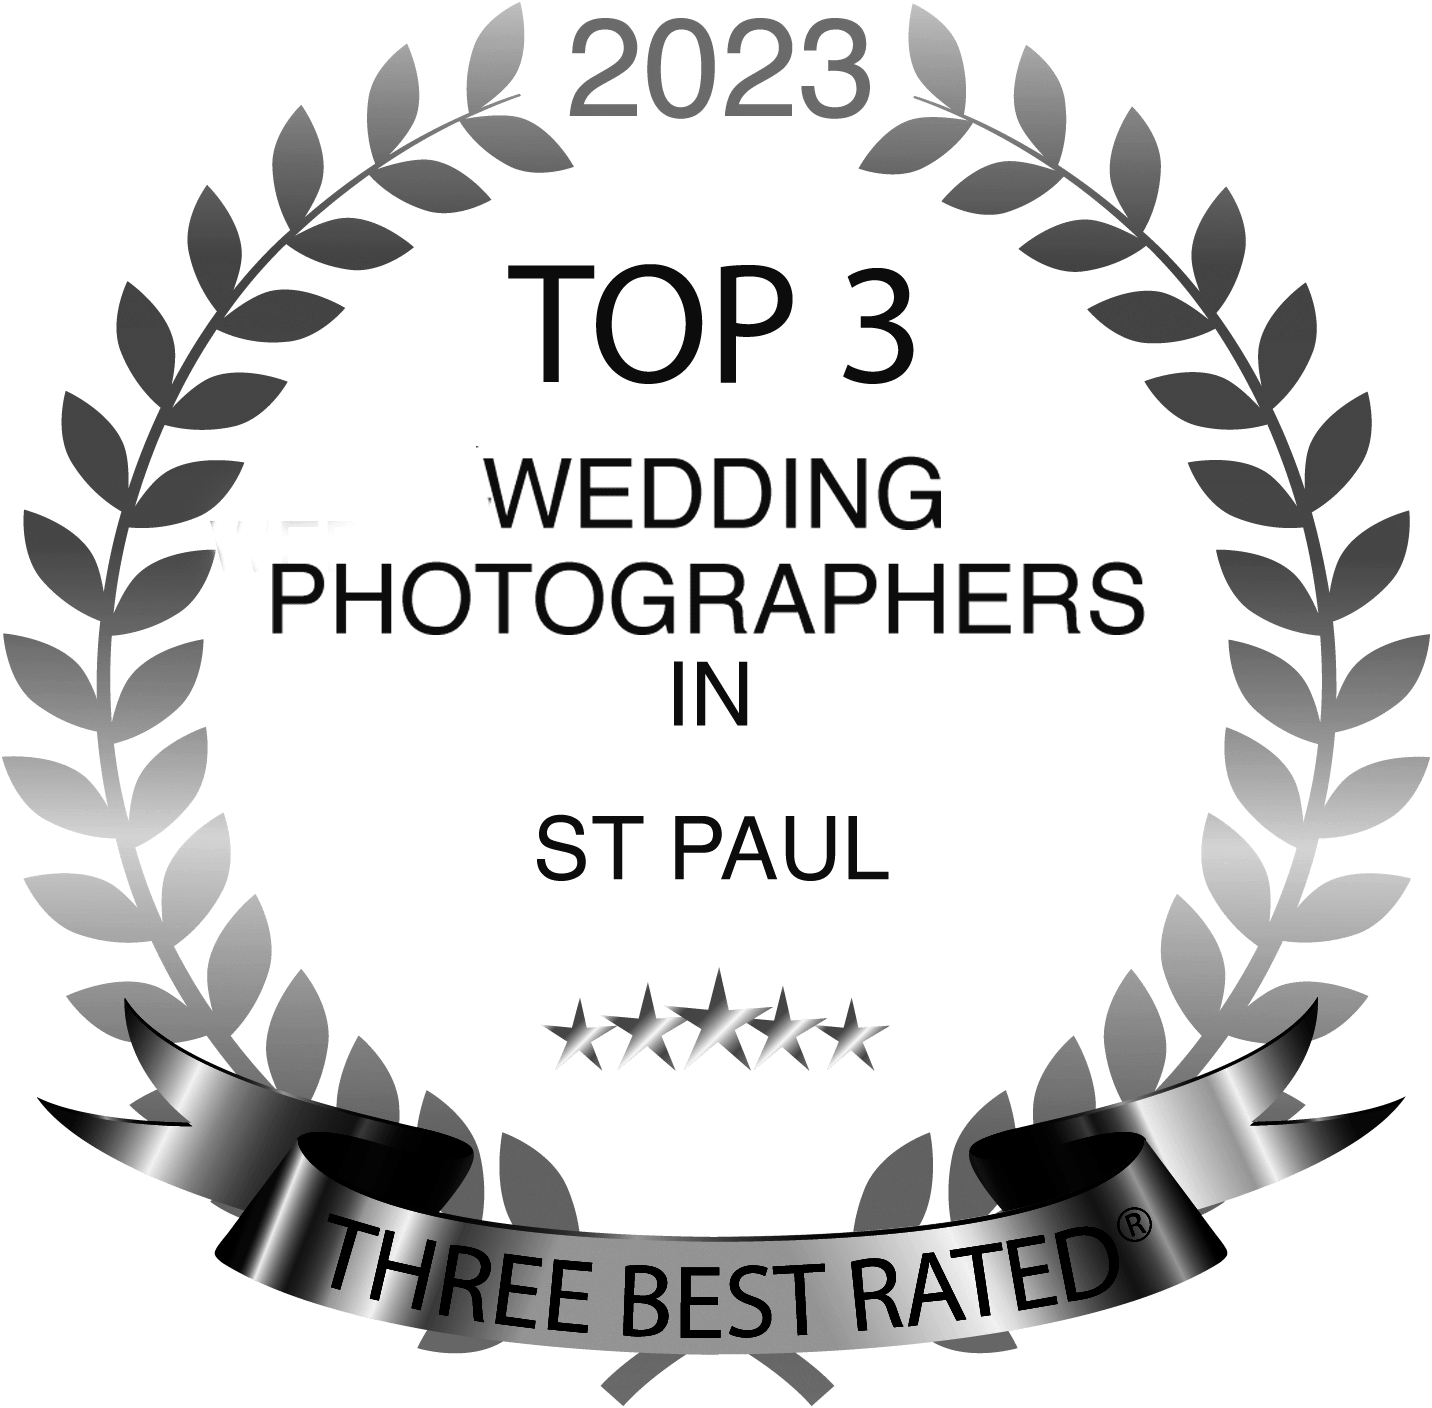 Best Wedding Photographer in St Paul Award